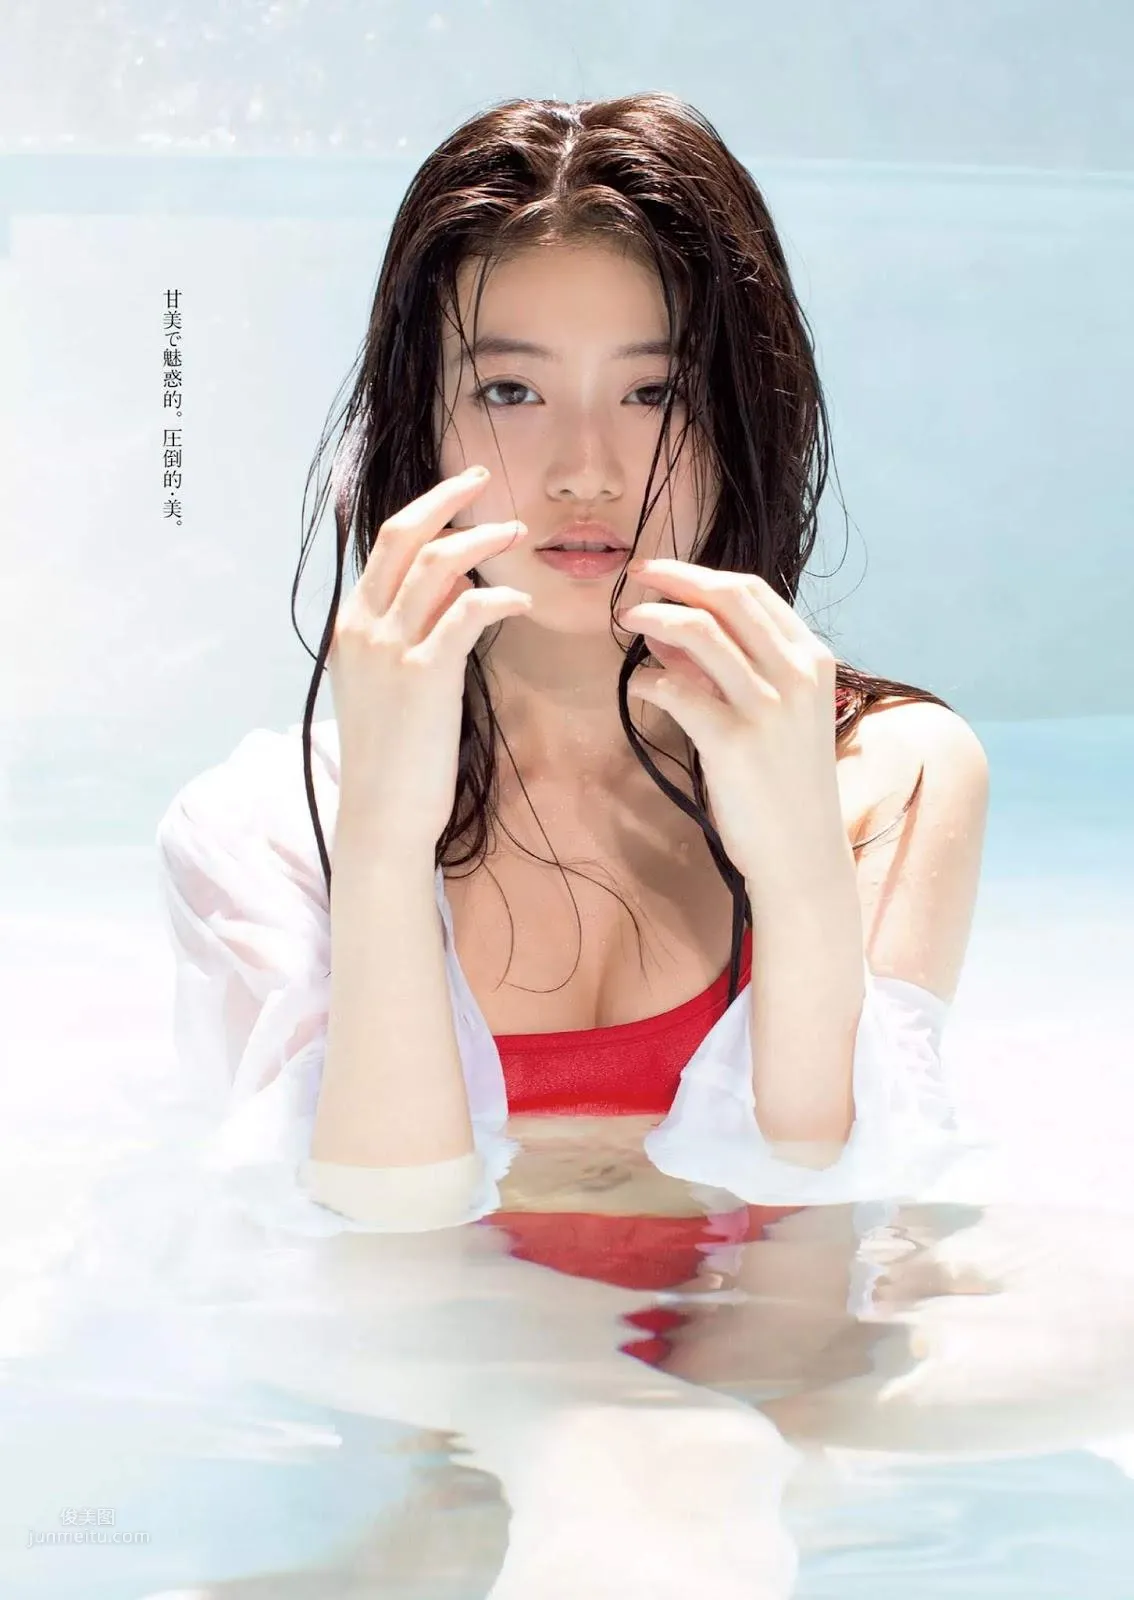 今田美桜, Imada Mio - Weekly Playboy, FLASH, FRIDAY, 2019_10